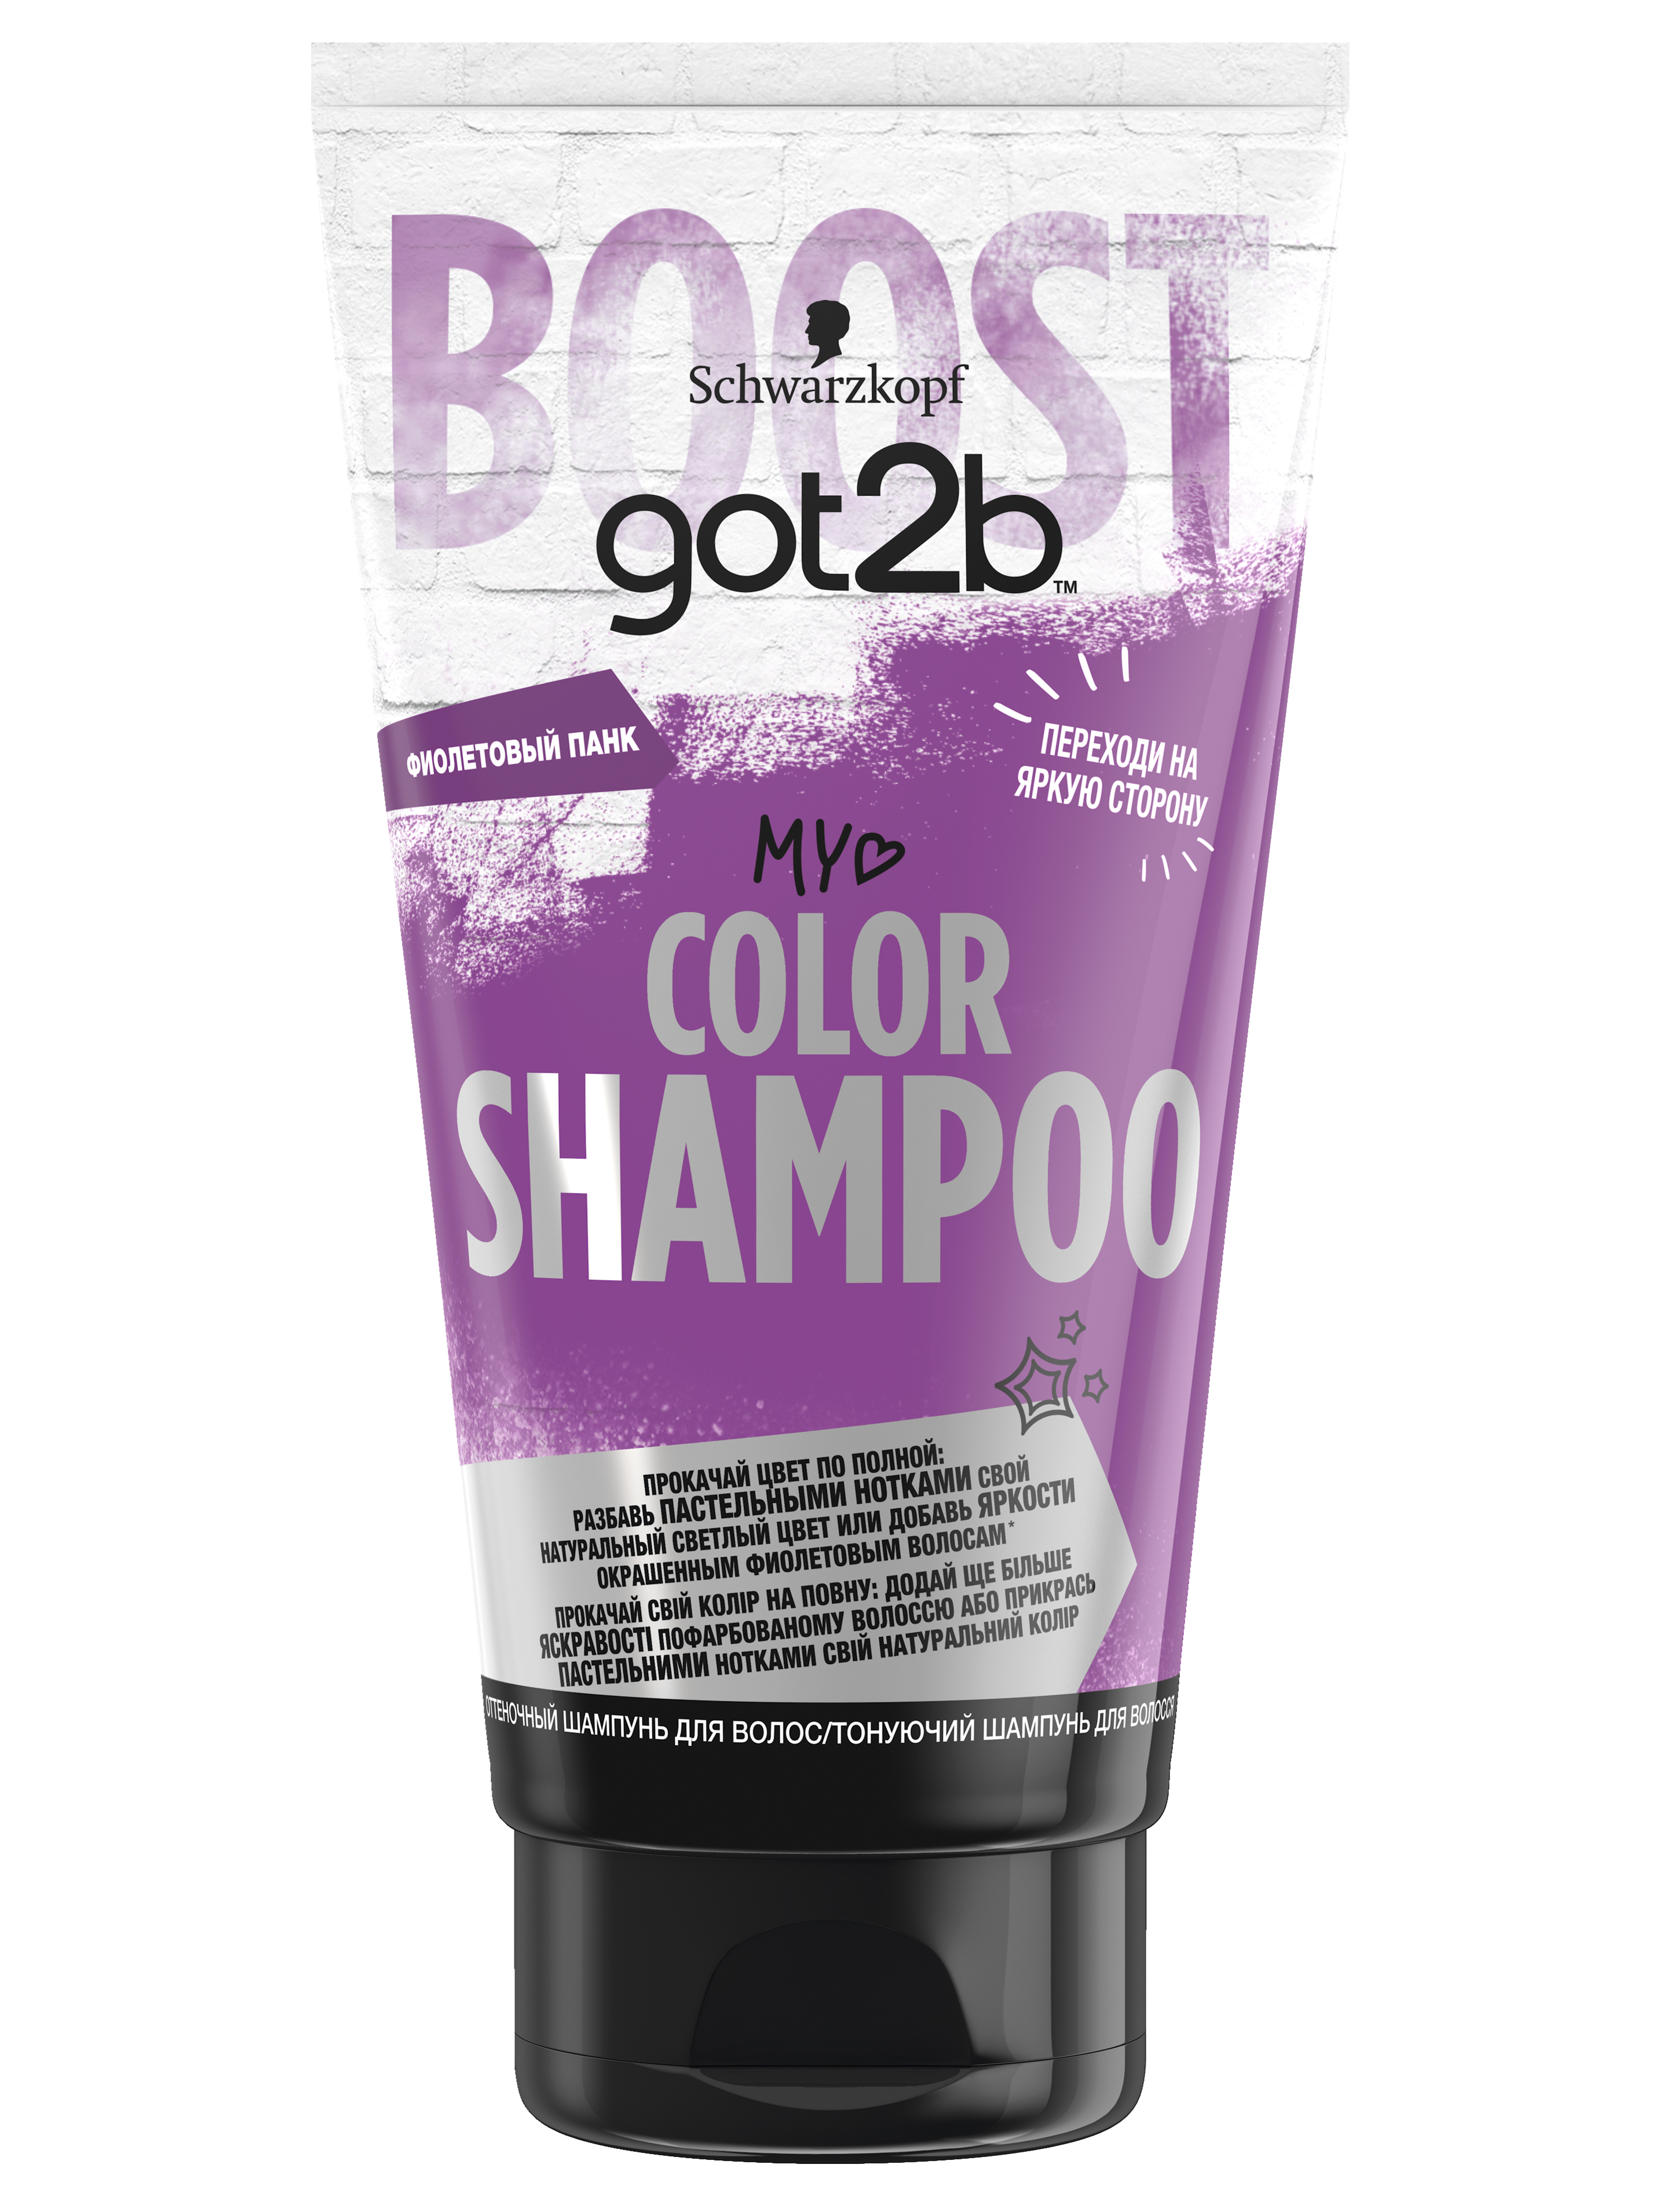 фото Оттеночный шампунь got2b color shampoo, фиолетовый панк, прокачай цвет по полной, 150 мл